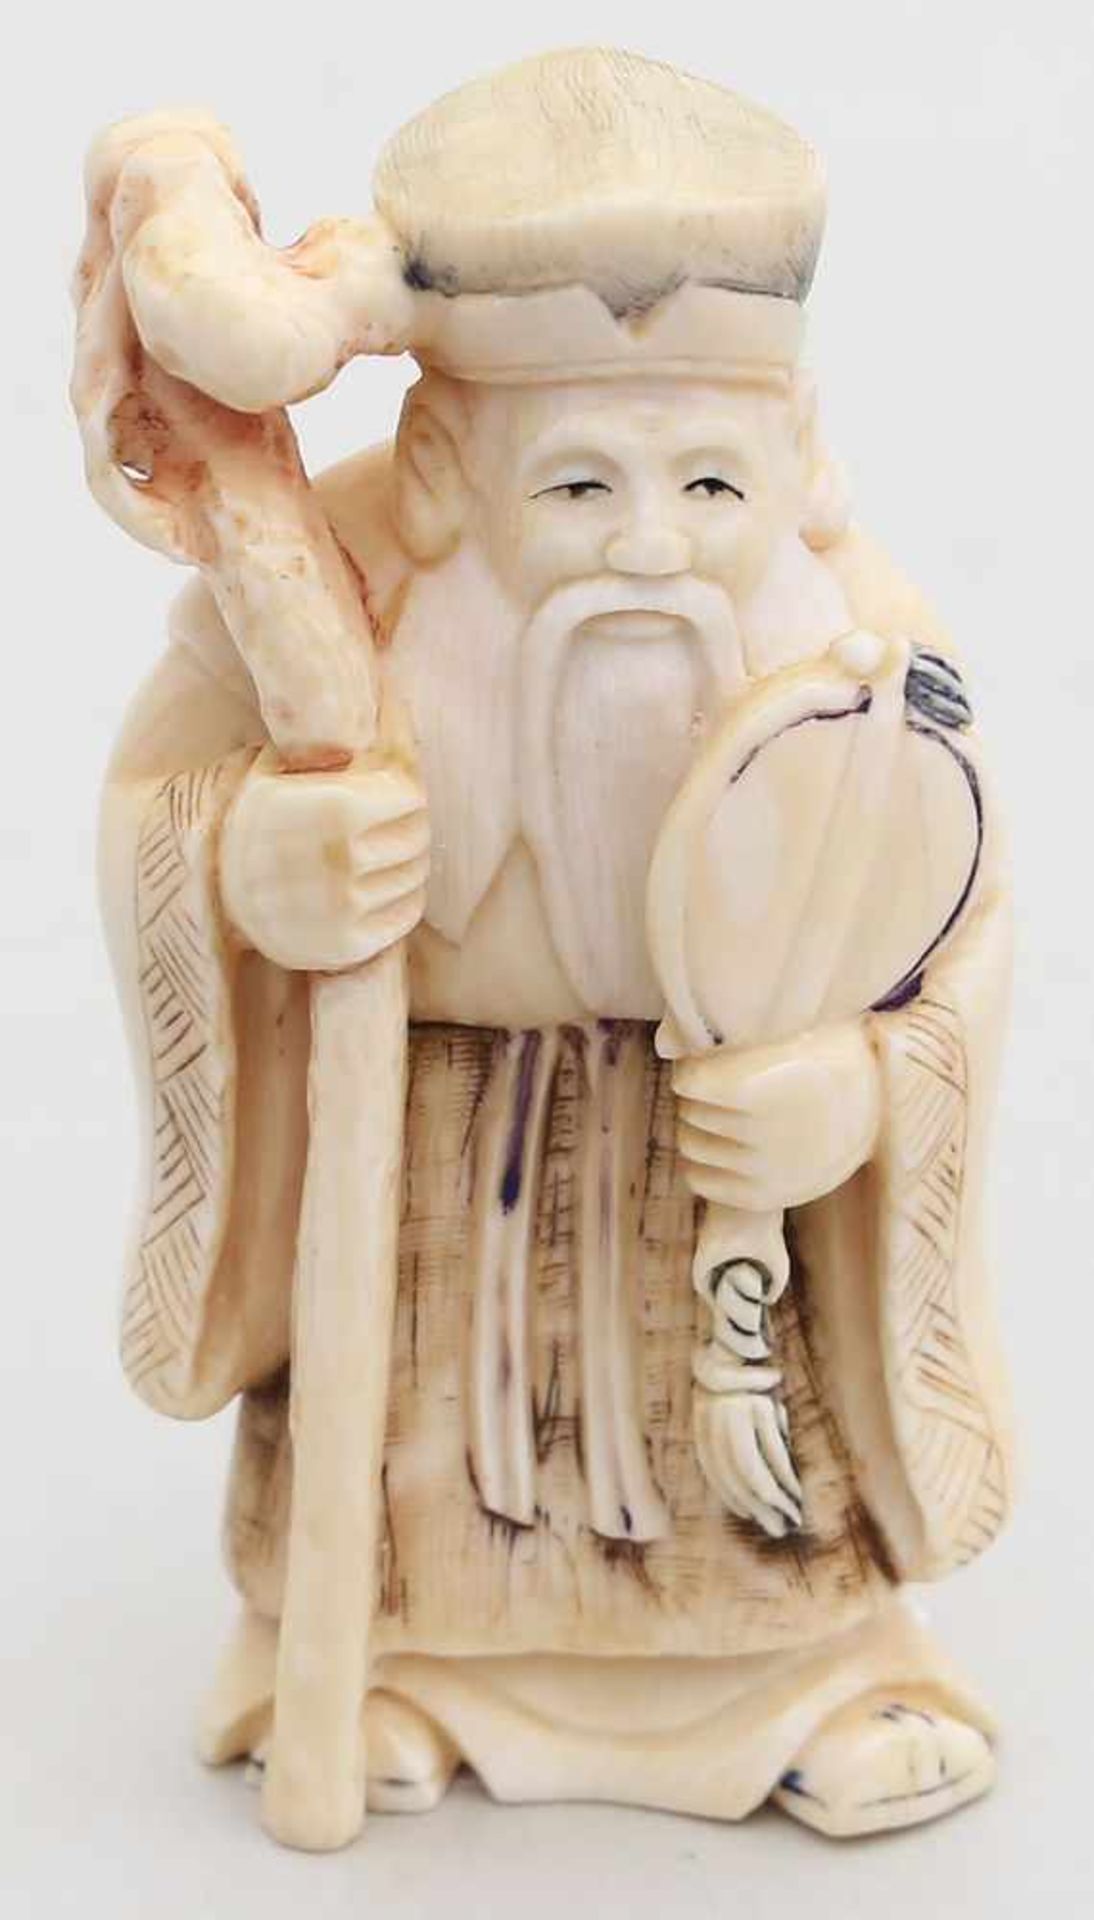 Sklulptur eines Gelehrten.Elfenbein, vollplastisch geschnitzt. China, 20. Jh. H. 8 cm. Beigegeben: